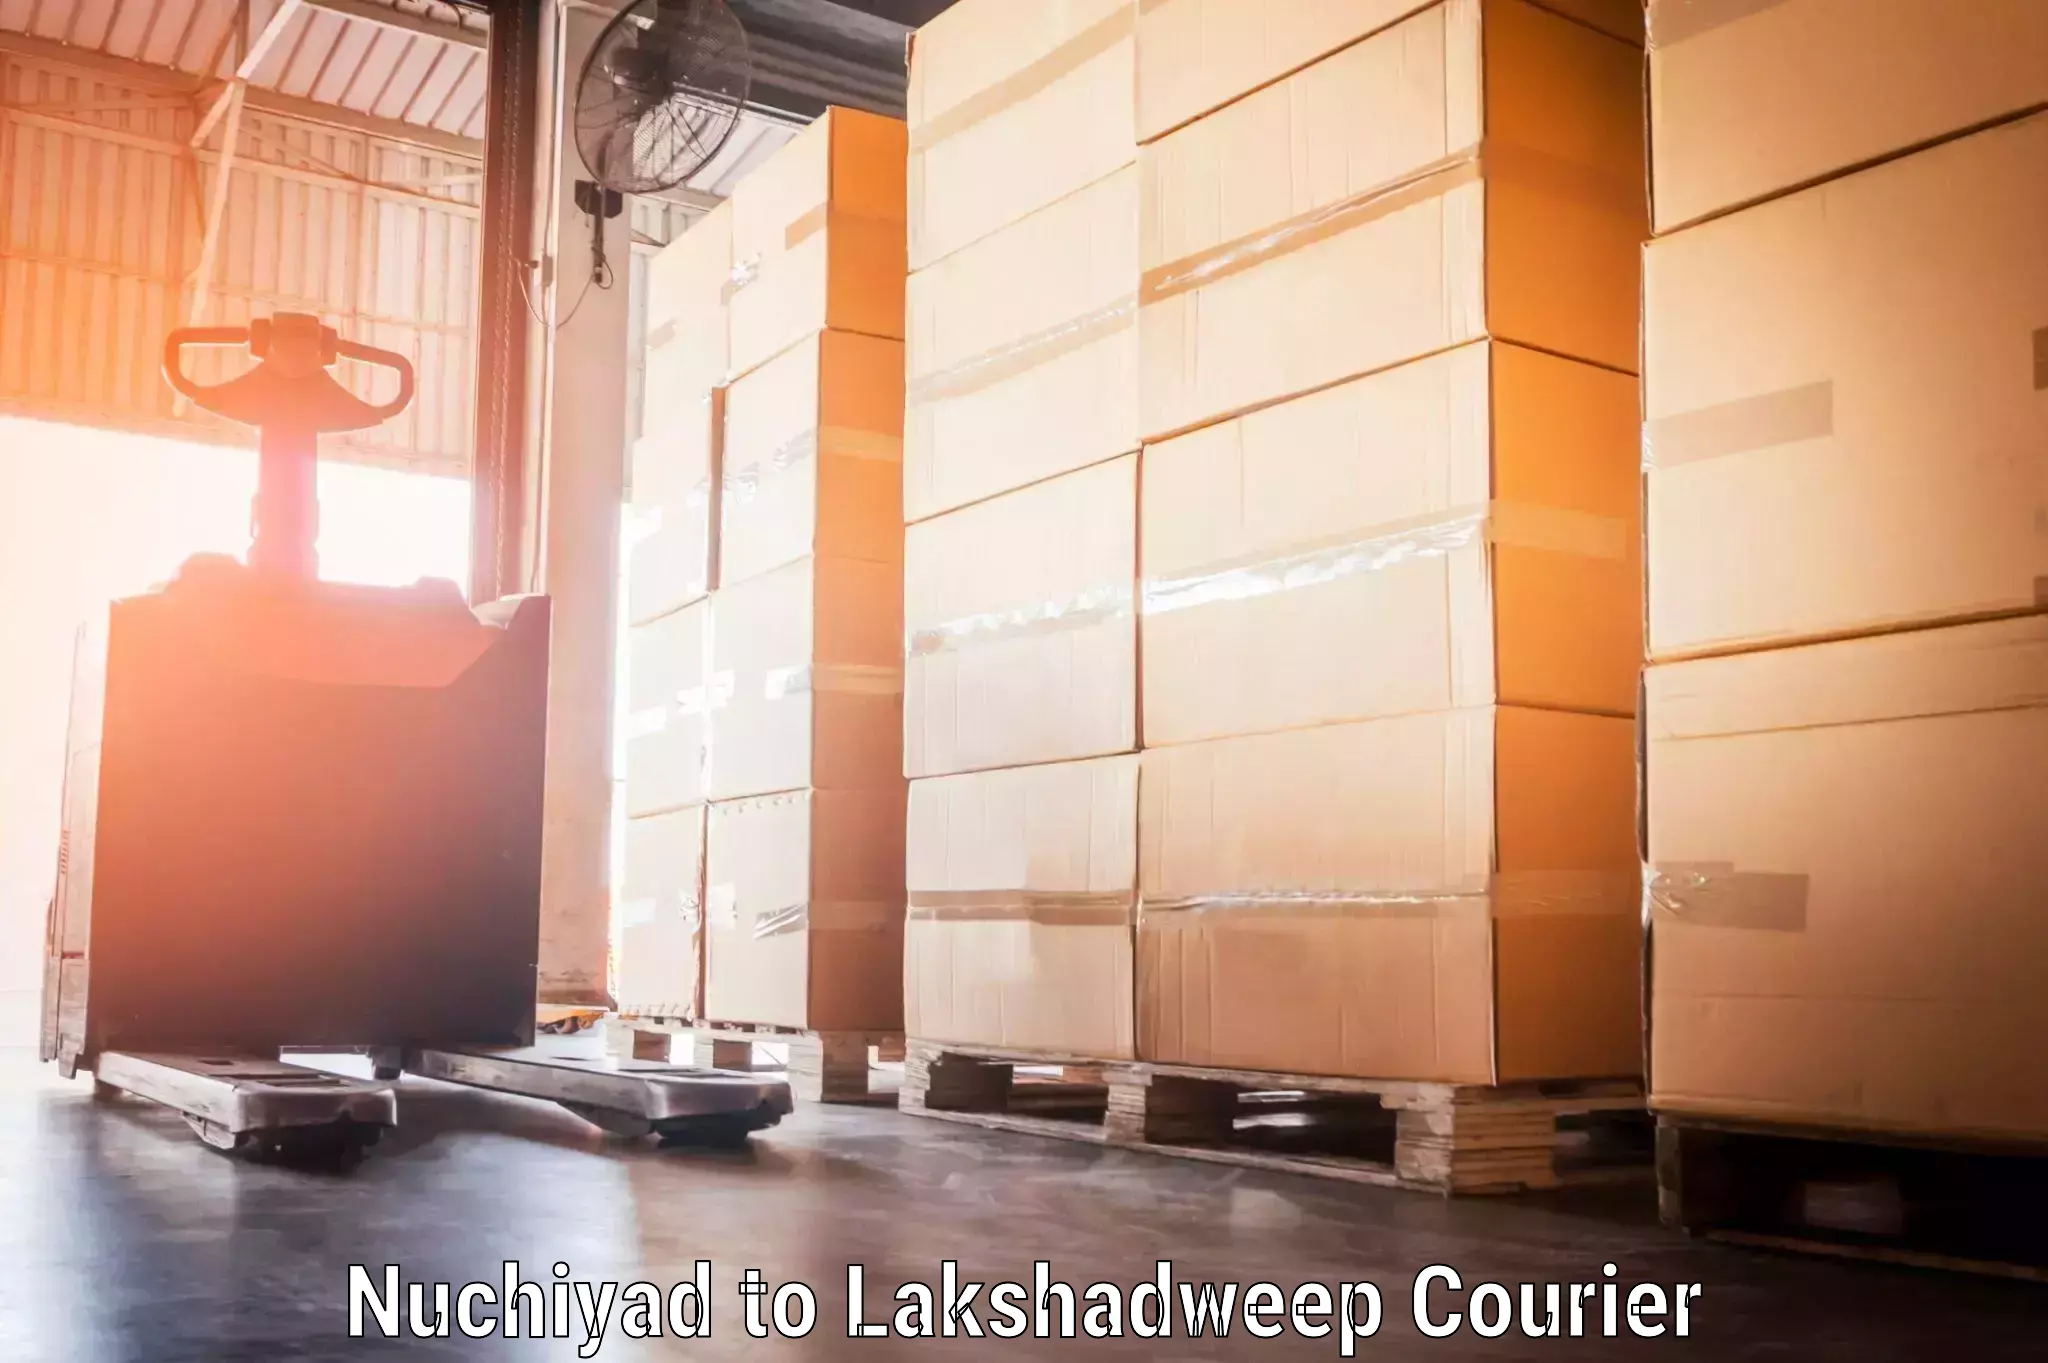 Baggage shipping advice Nuchiyad to Lakshadweep